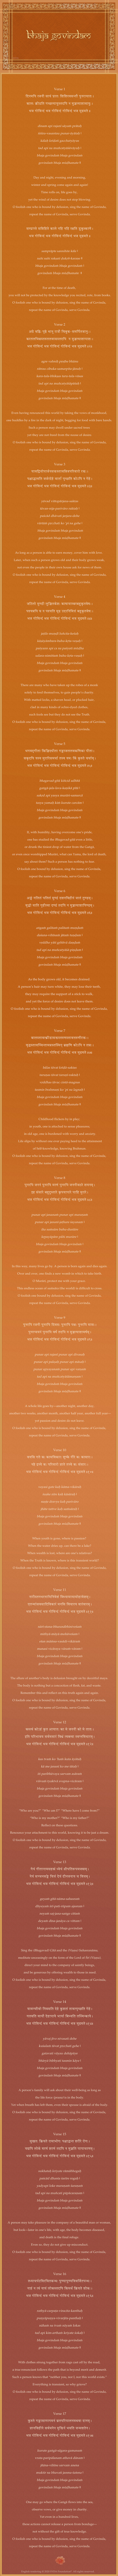 Lyric sheet for Bhaja Govindam